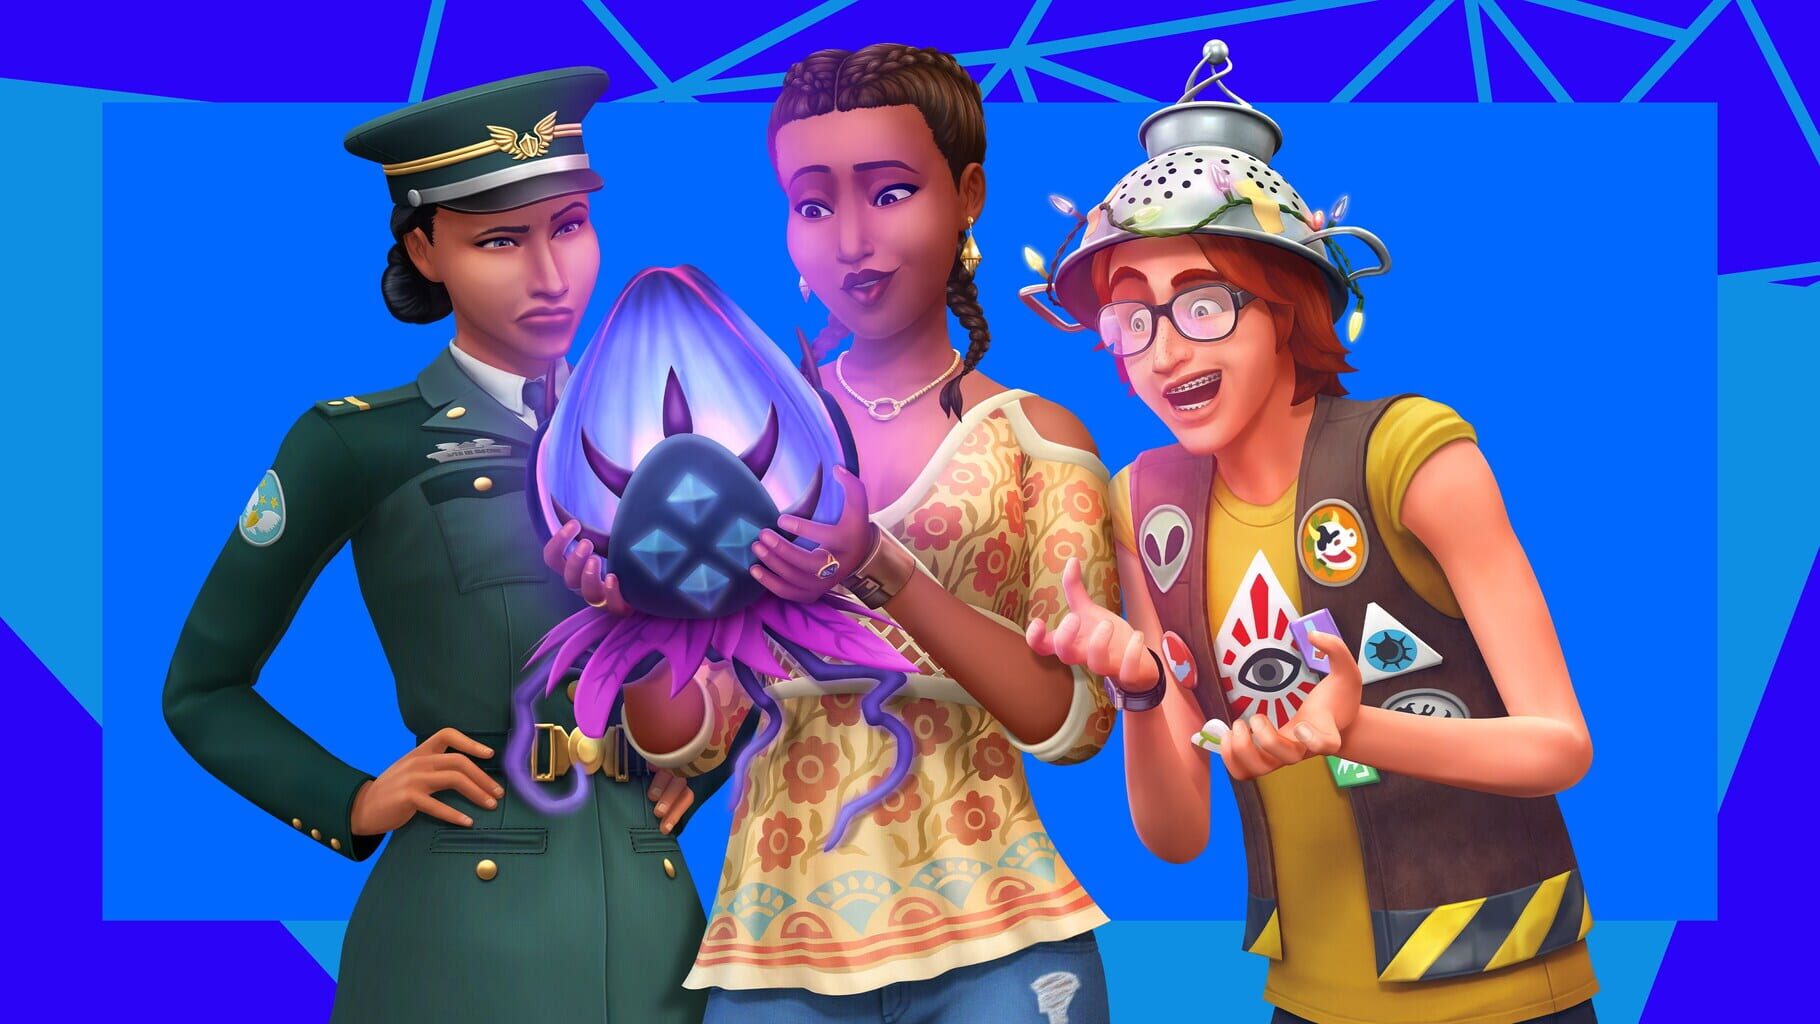 Arte - The Sims 4: StrangerVille